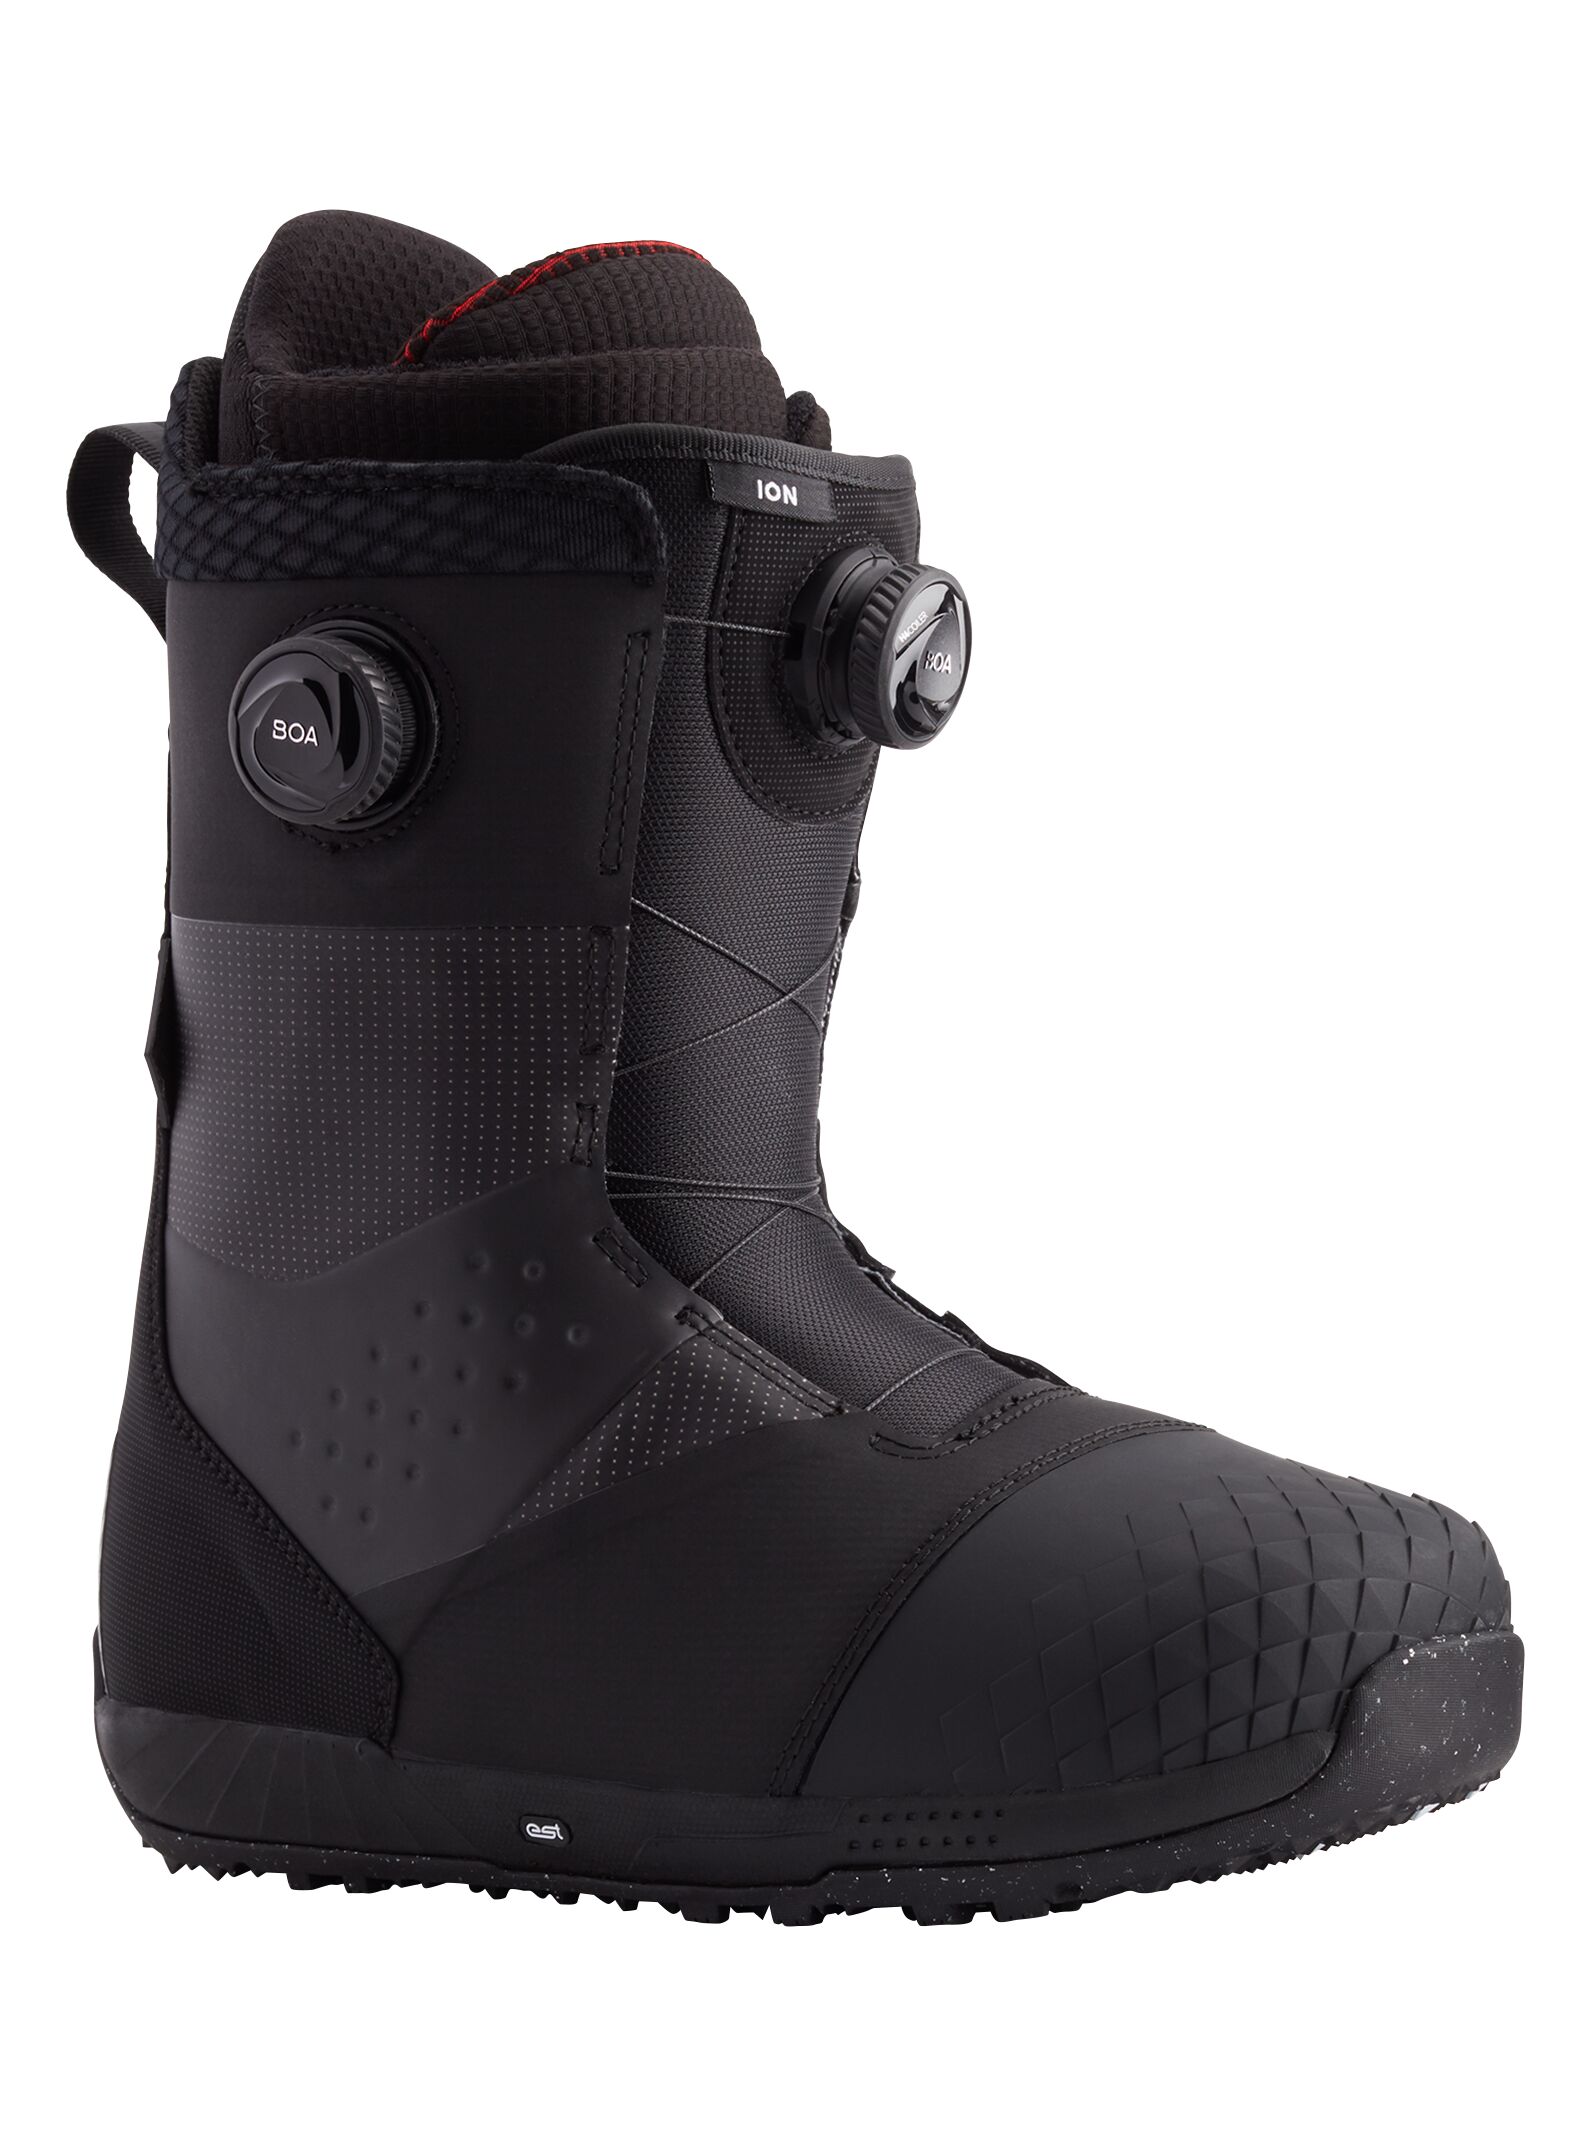 Burton Ion BOA Snowboard Boots black